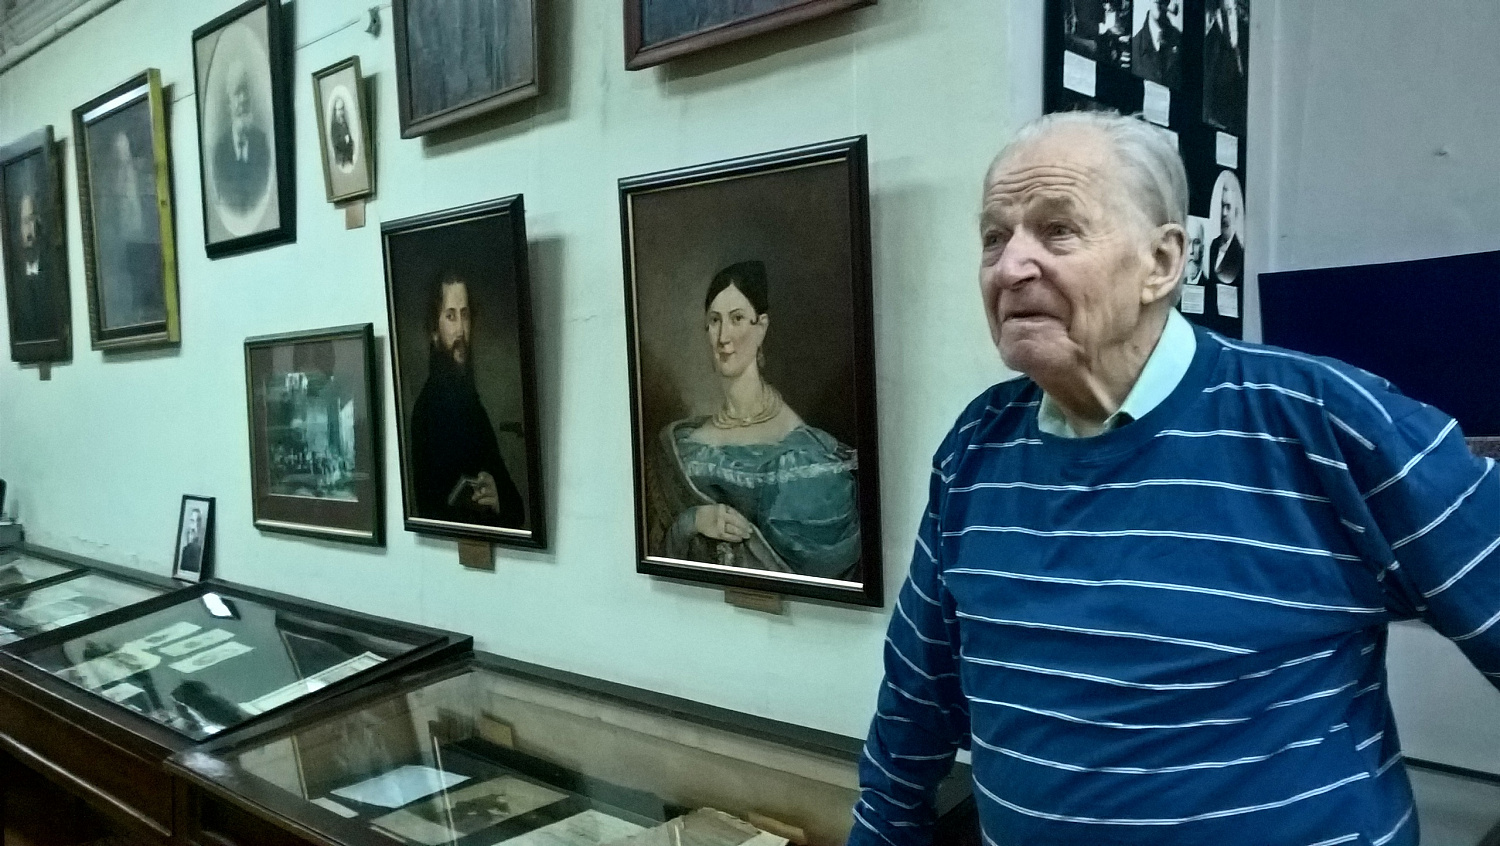 Сегодня день памяти Льва Николаевича Краснопевцева, основателя нашего Музея